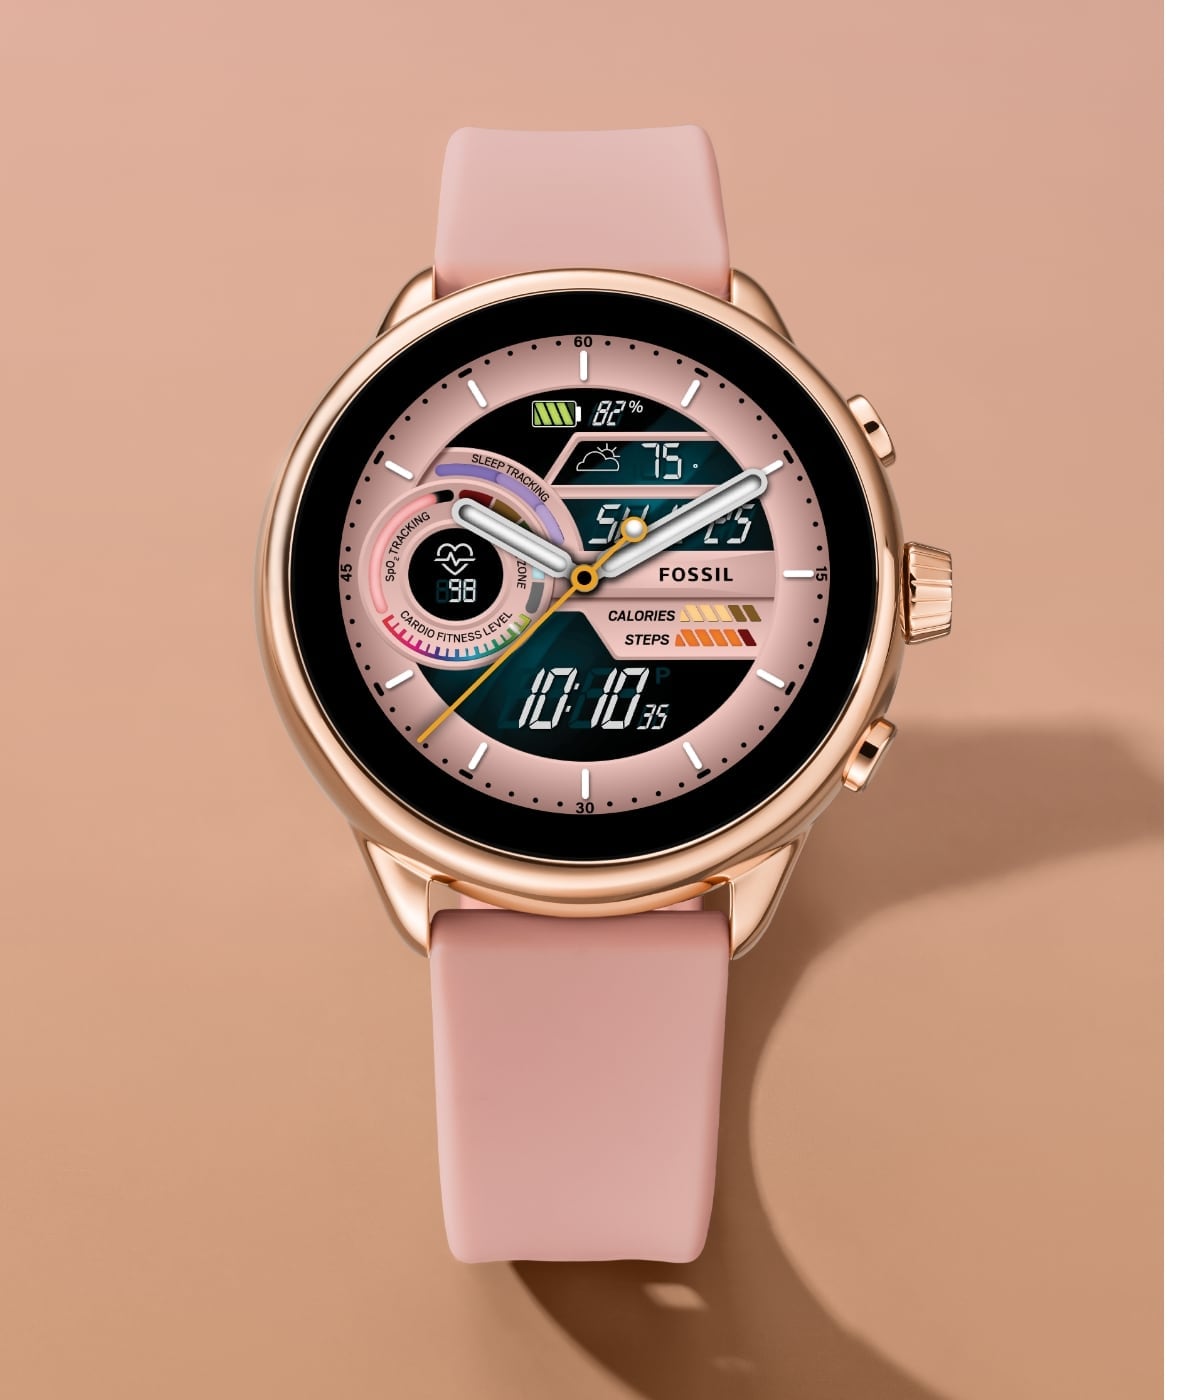 Une montre connectée hybride Gen 6 édition Wellness en silicone rose.